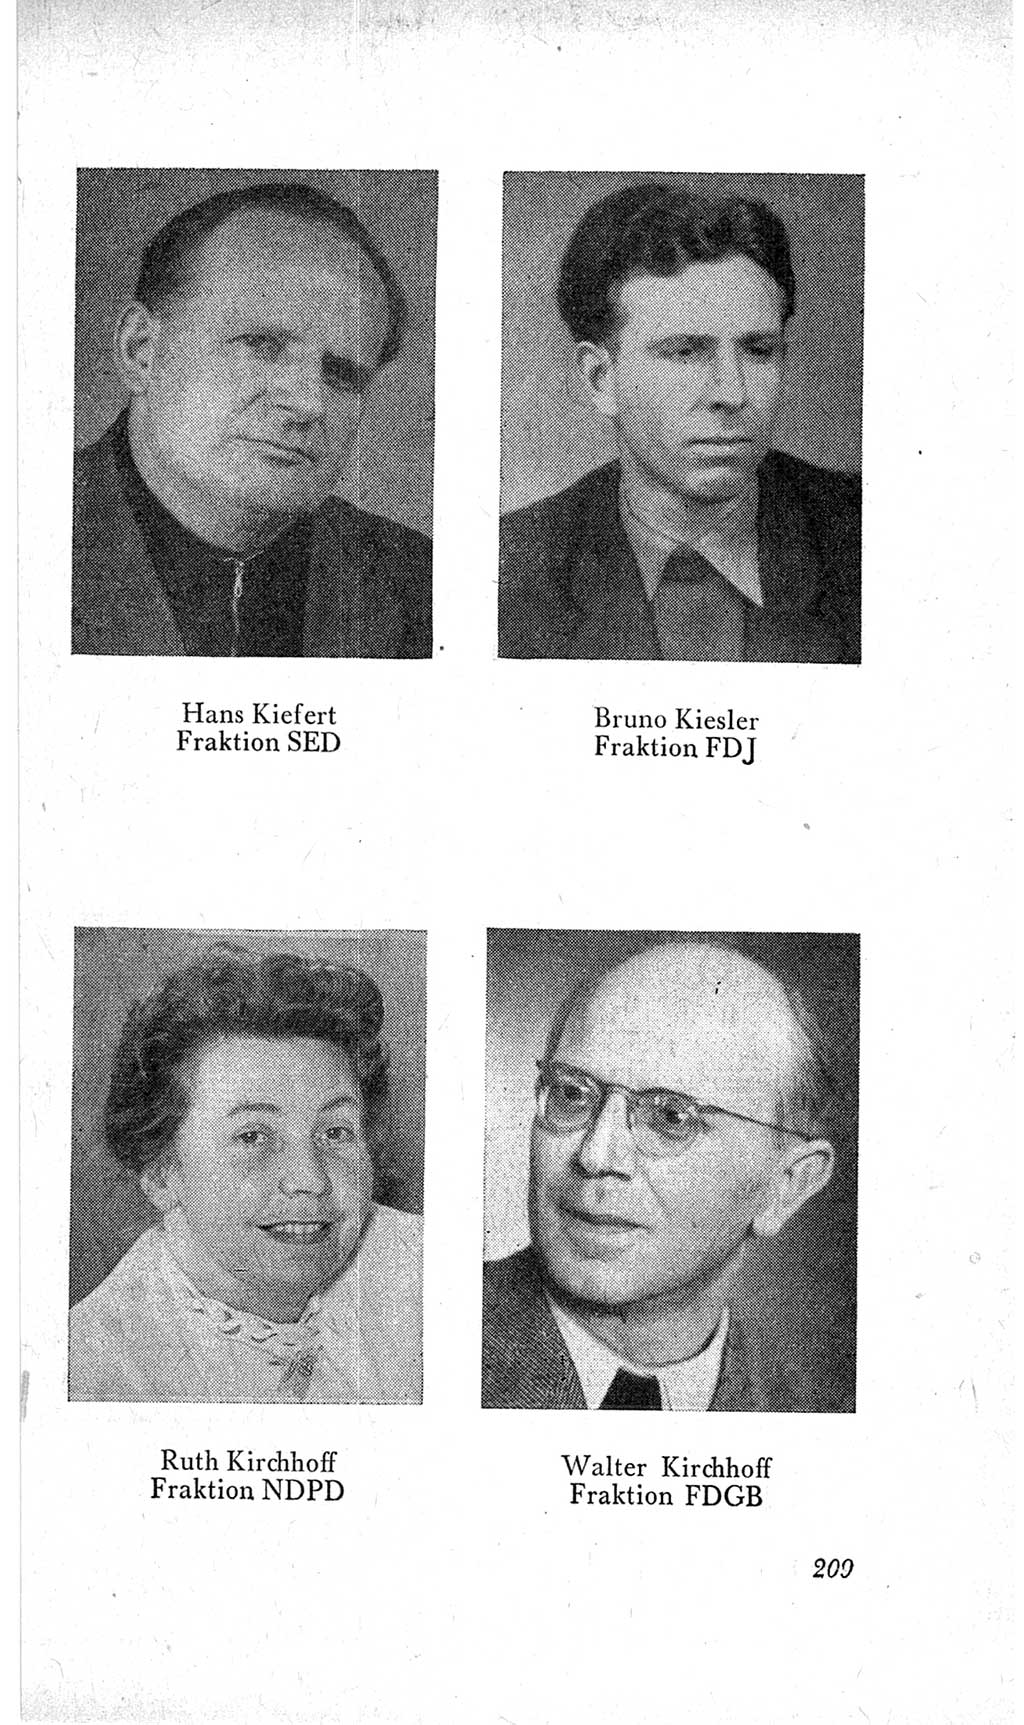 Handbuch der Volkskammer (VK) der Deutschen Demokratischen Republik (DDR), 2. Wahlperiode 1954-1958, Seite 209 (Hdb. VK. DDR, 2. WP. 1954-1958, S. 209)